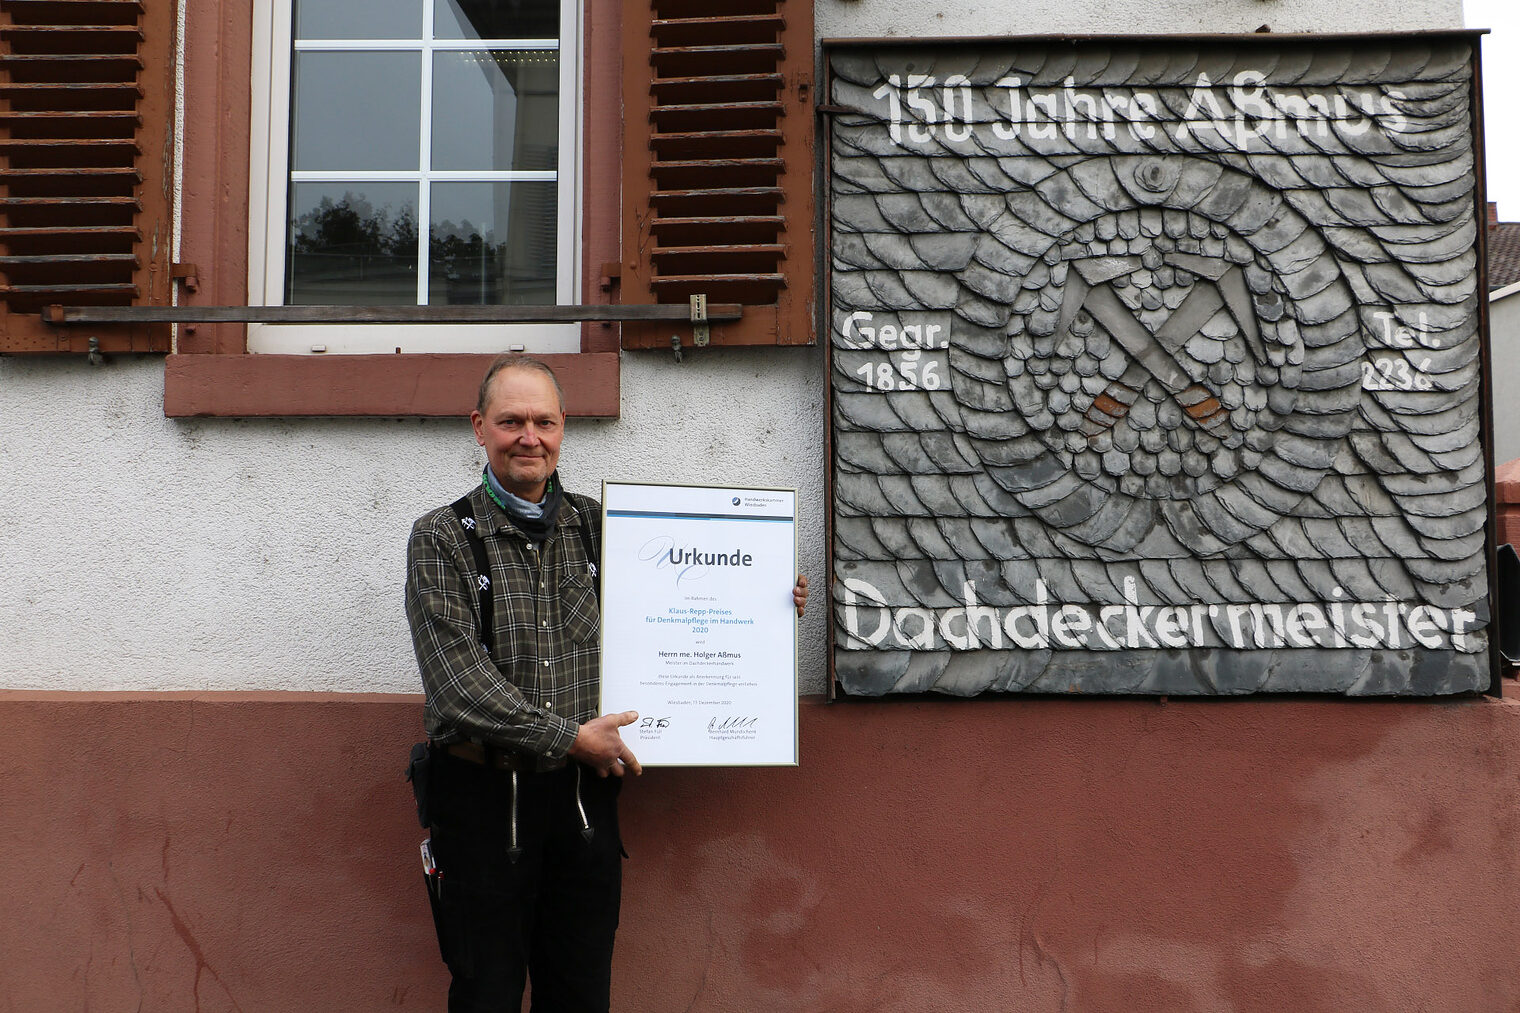 Holger Aßmus, Meister im Dachdeckerhandwerk, wurde für seinen denkmalpflegerischen Einsatz eine Anerkennungsurkunde überreicht.